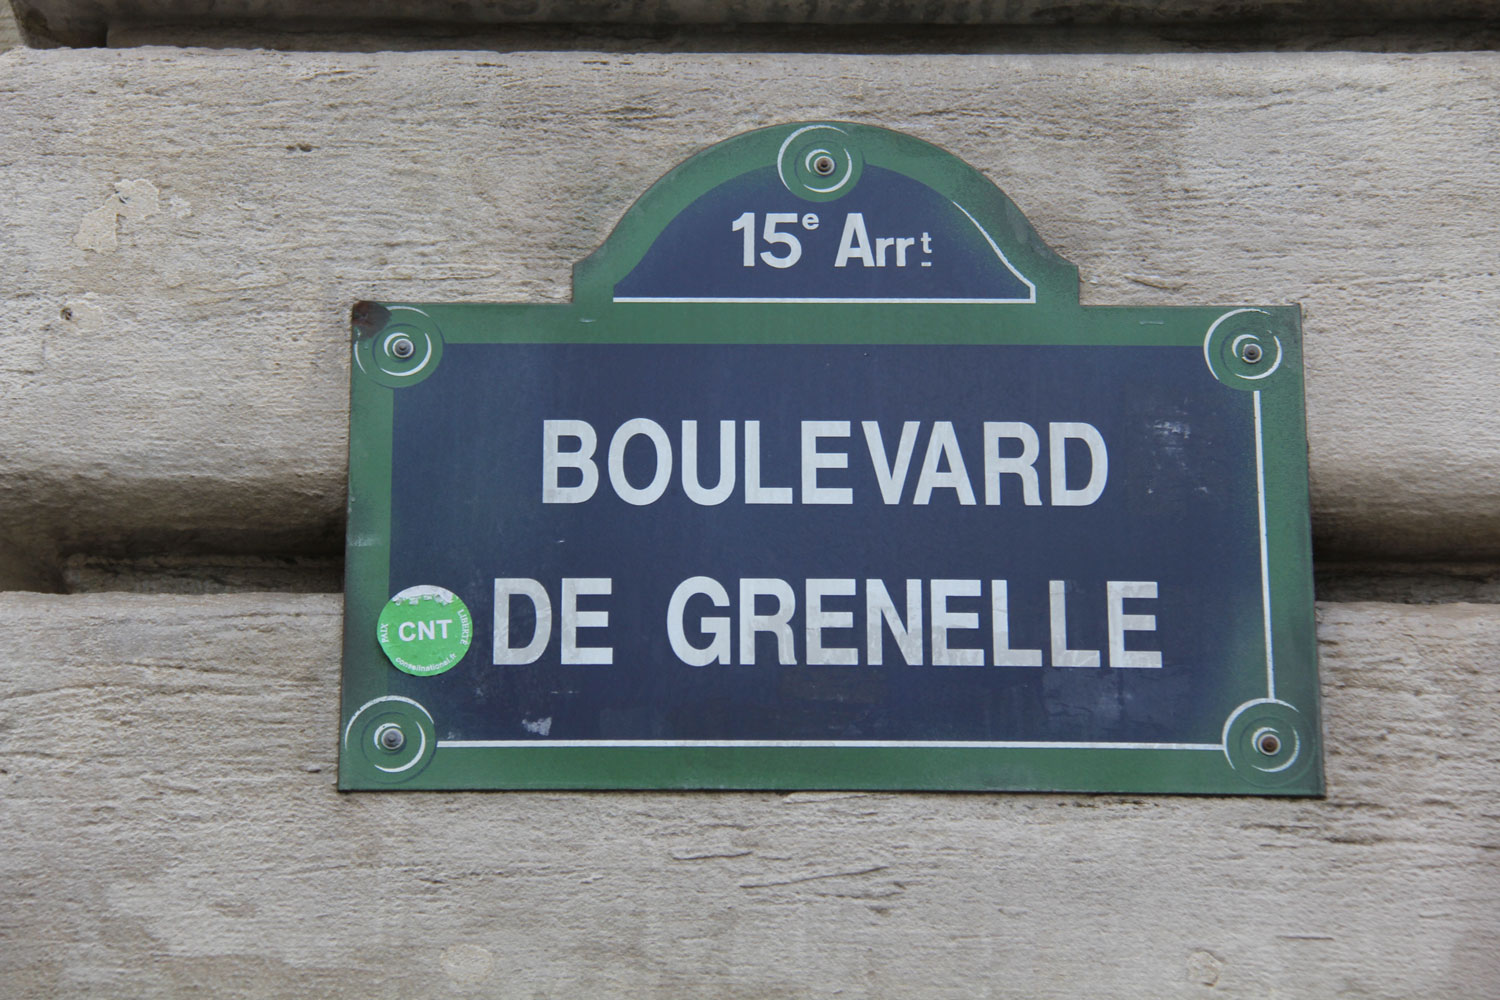 À deux pas du métro, la FFF est au 87 boulevard de Grenelle, dans le 15ème arrondissement, tout près de la Tour Eiffel © Globe Reporters